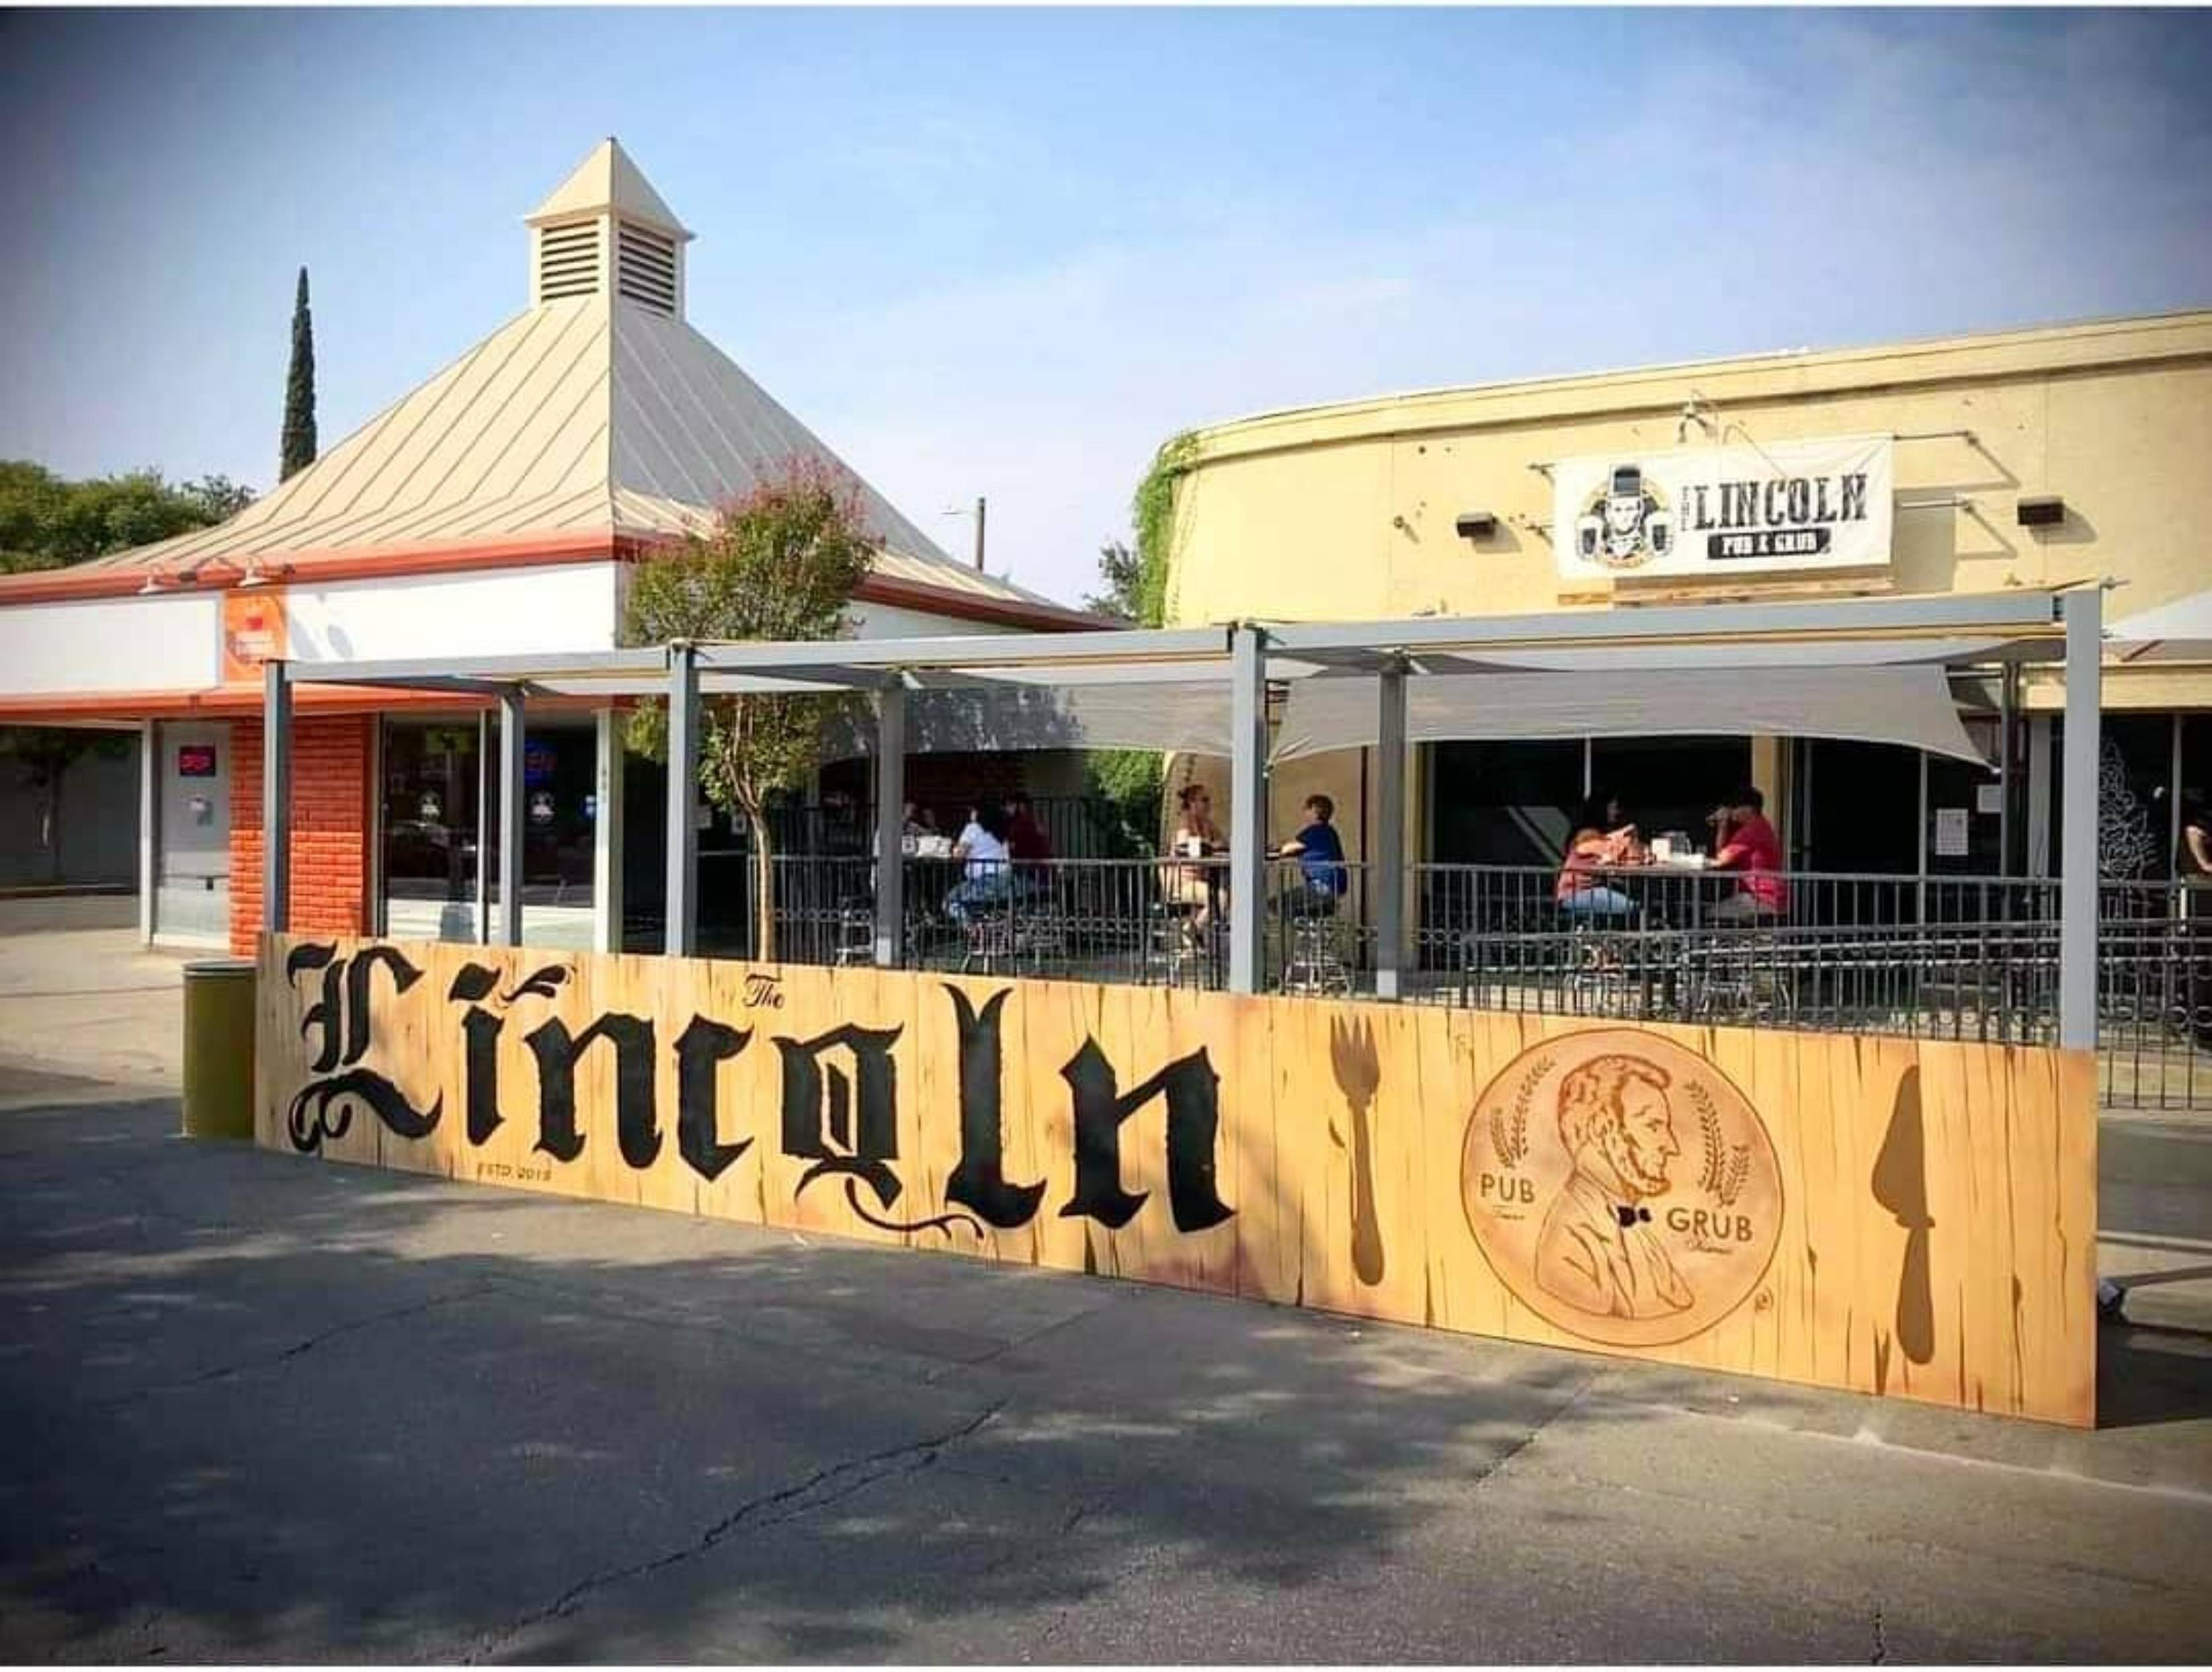 The Lincoln Pub & Grub